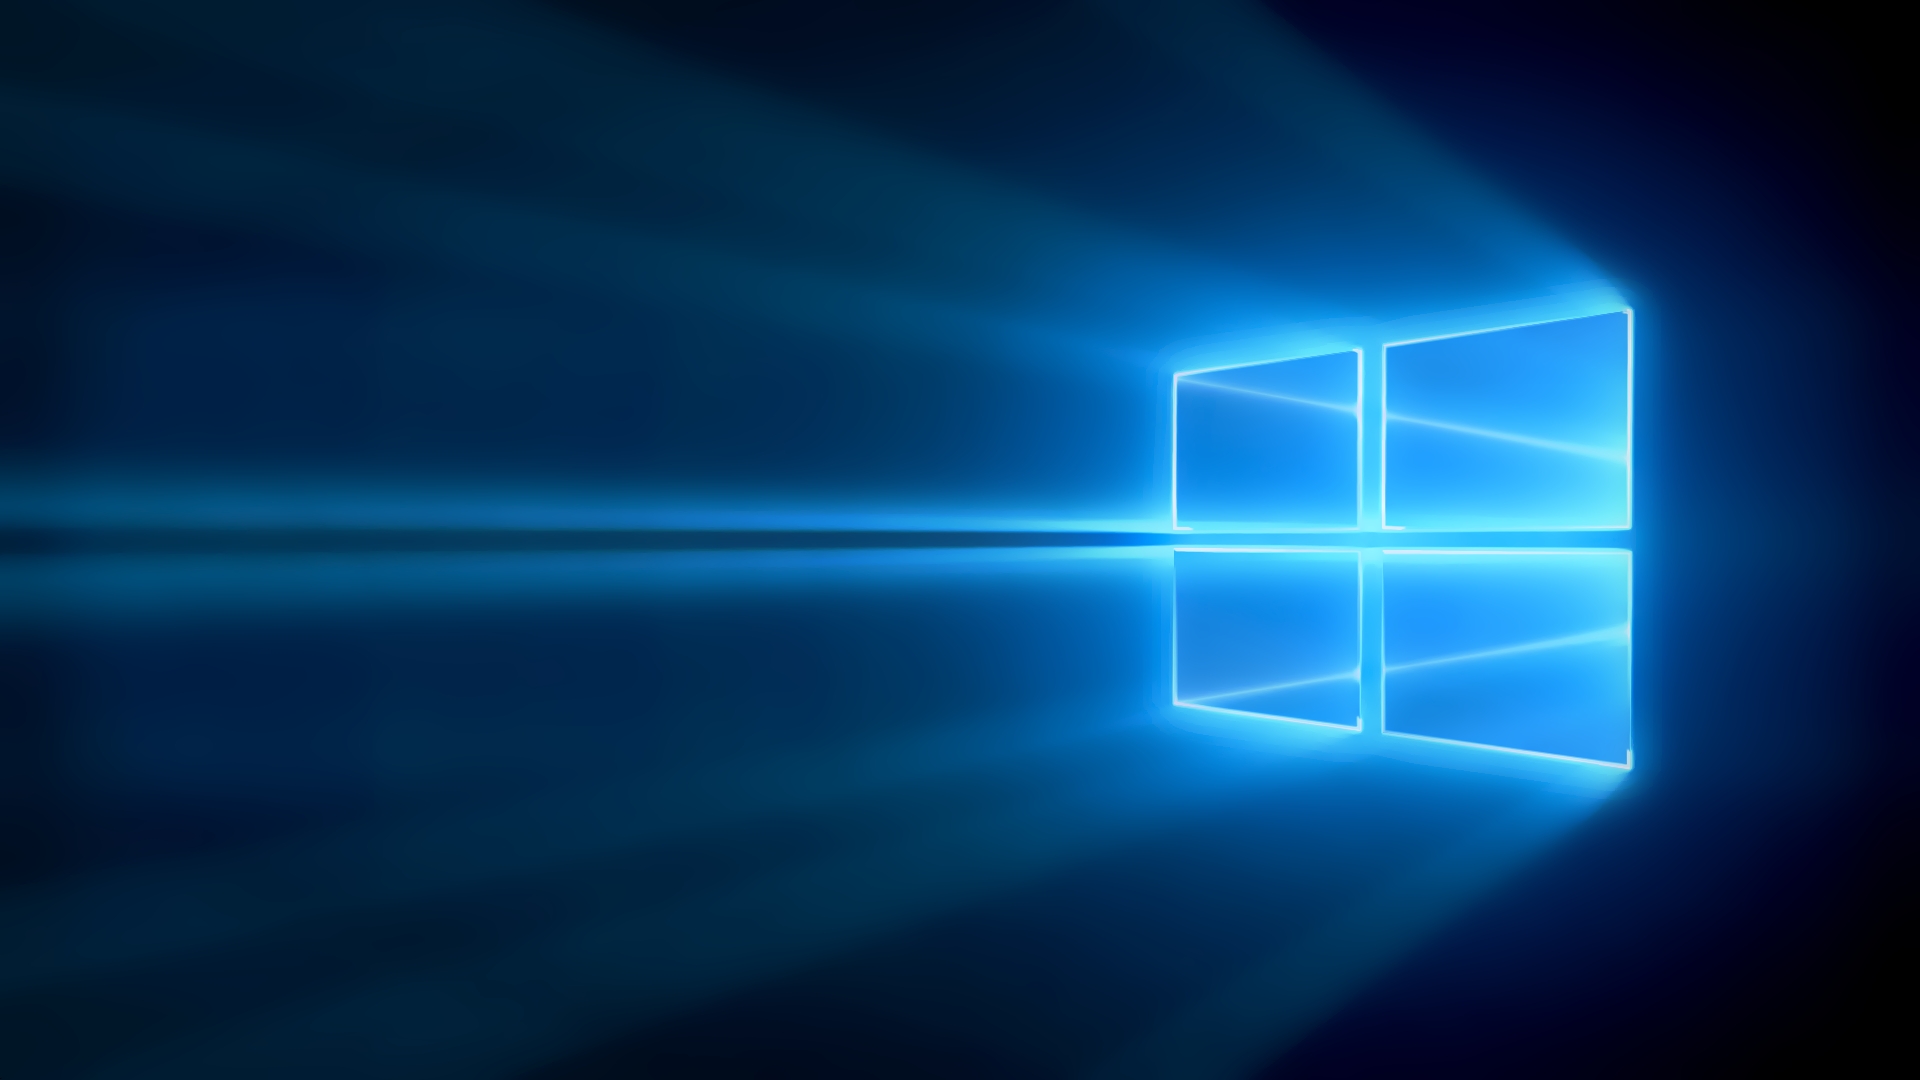 Windows 10 Official Wallpaper windows 10 official wallpaperjpg 1920x1080